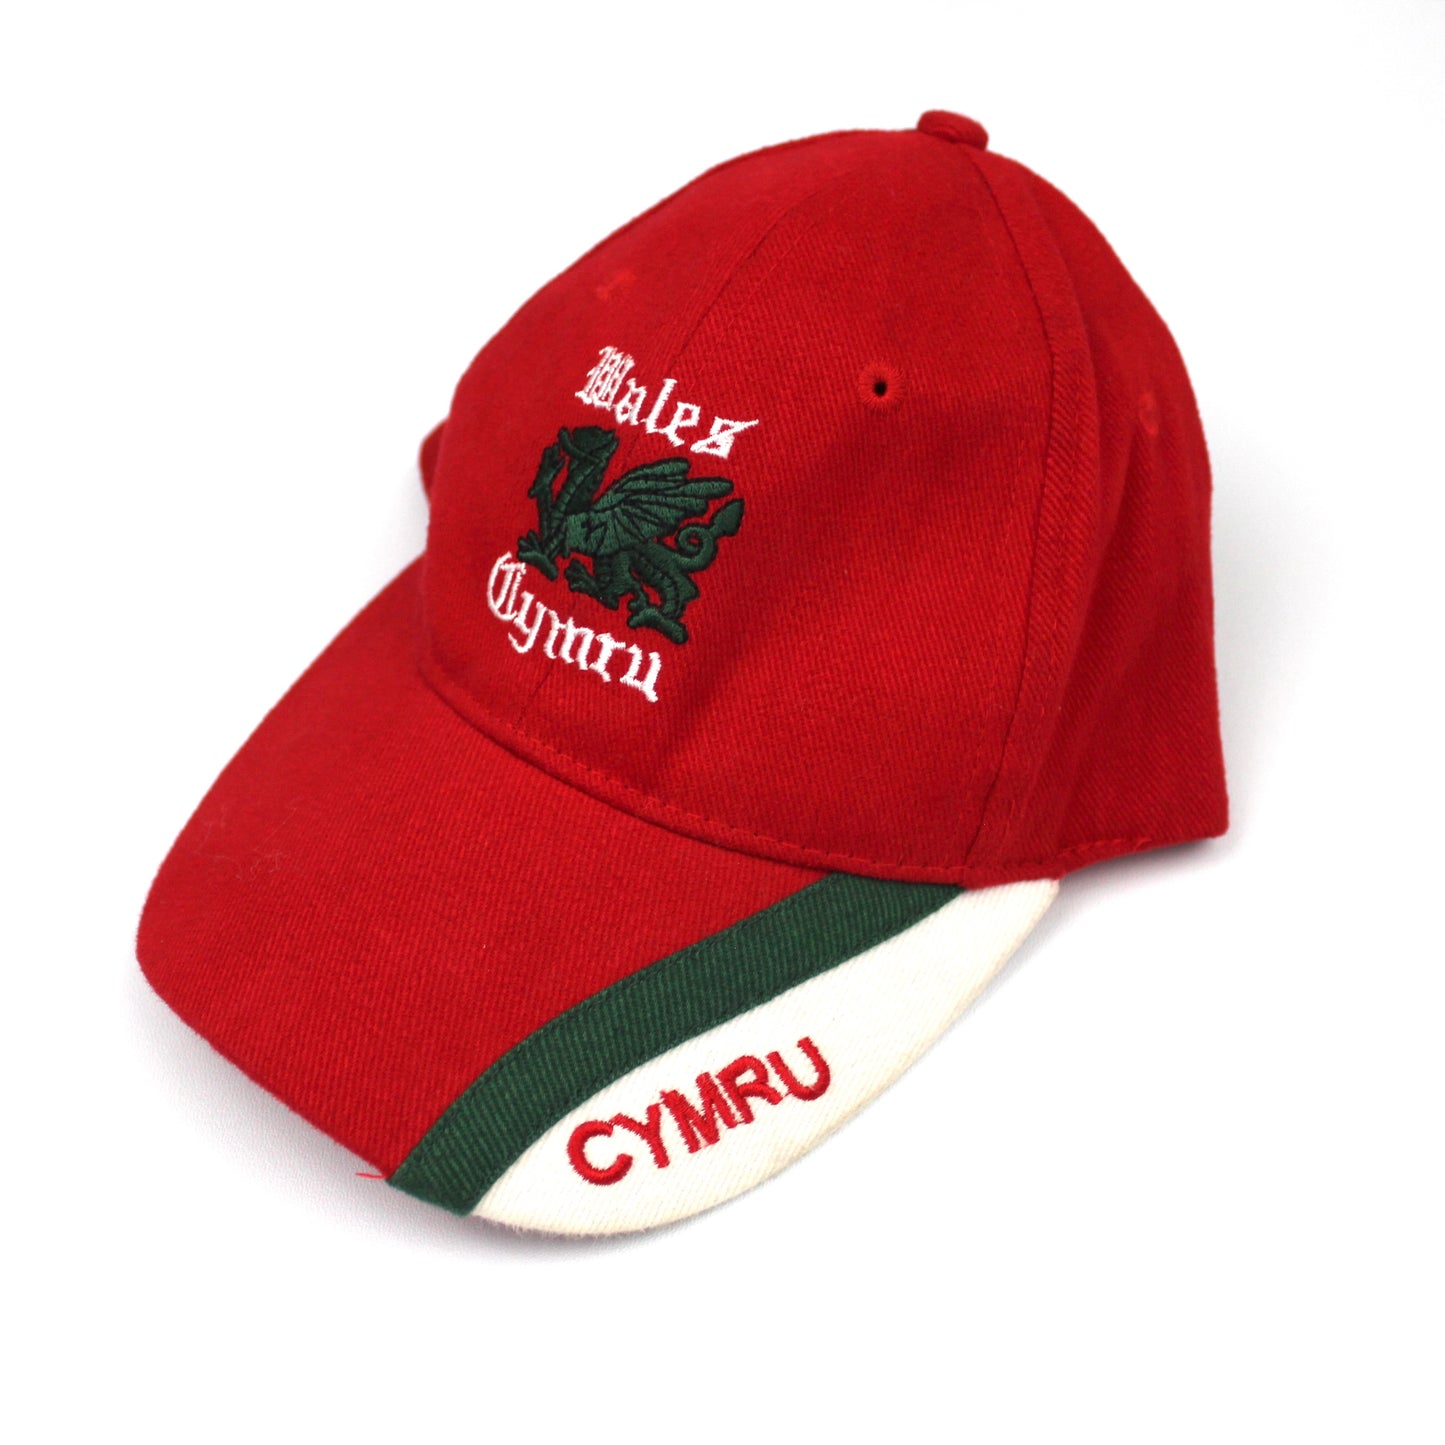 Vintage Wales Cymru Cap